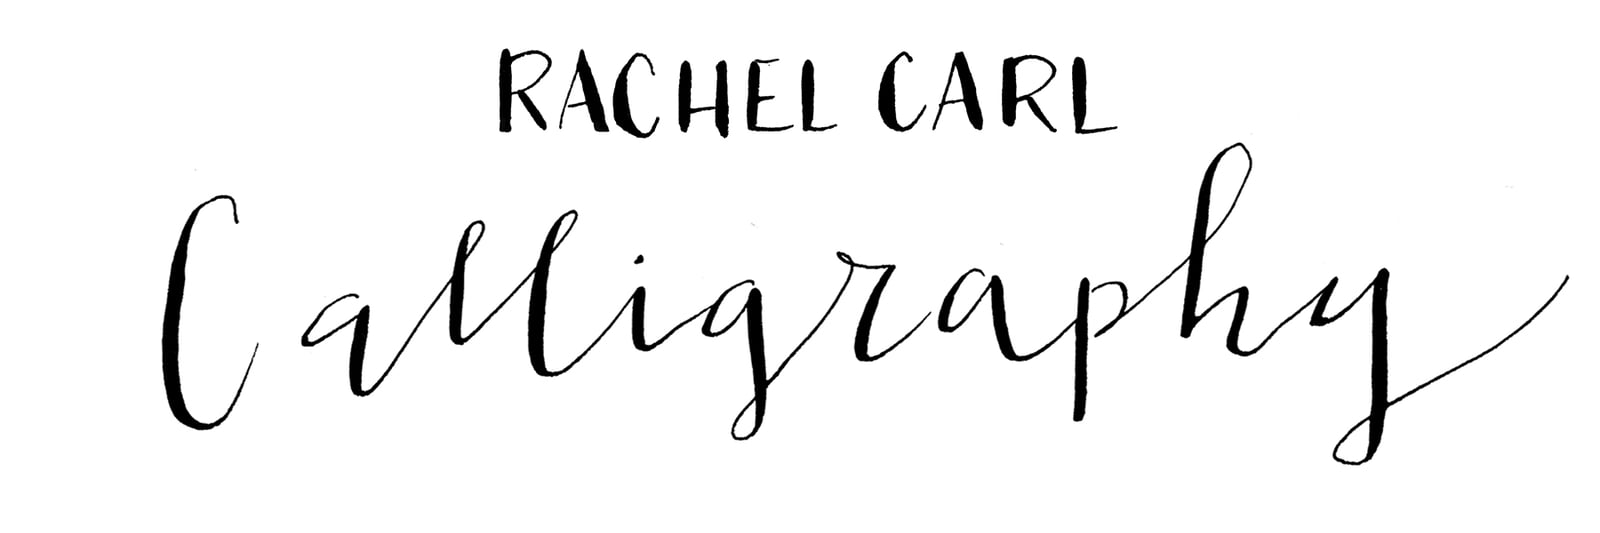 Rachelcarl